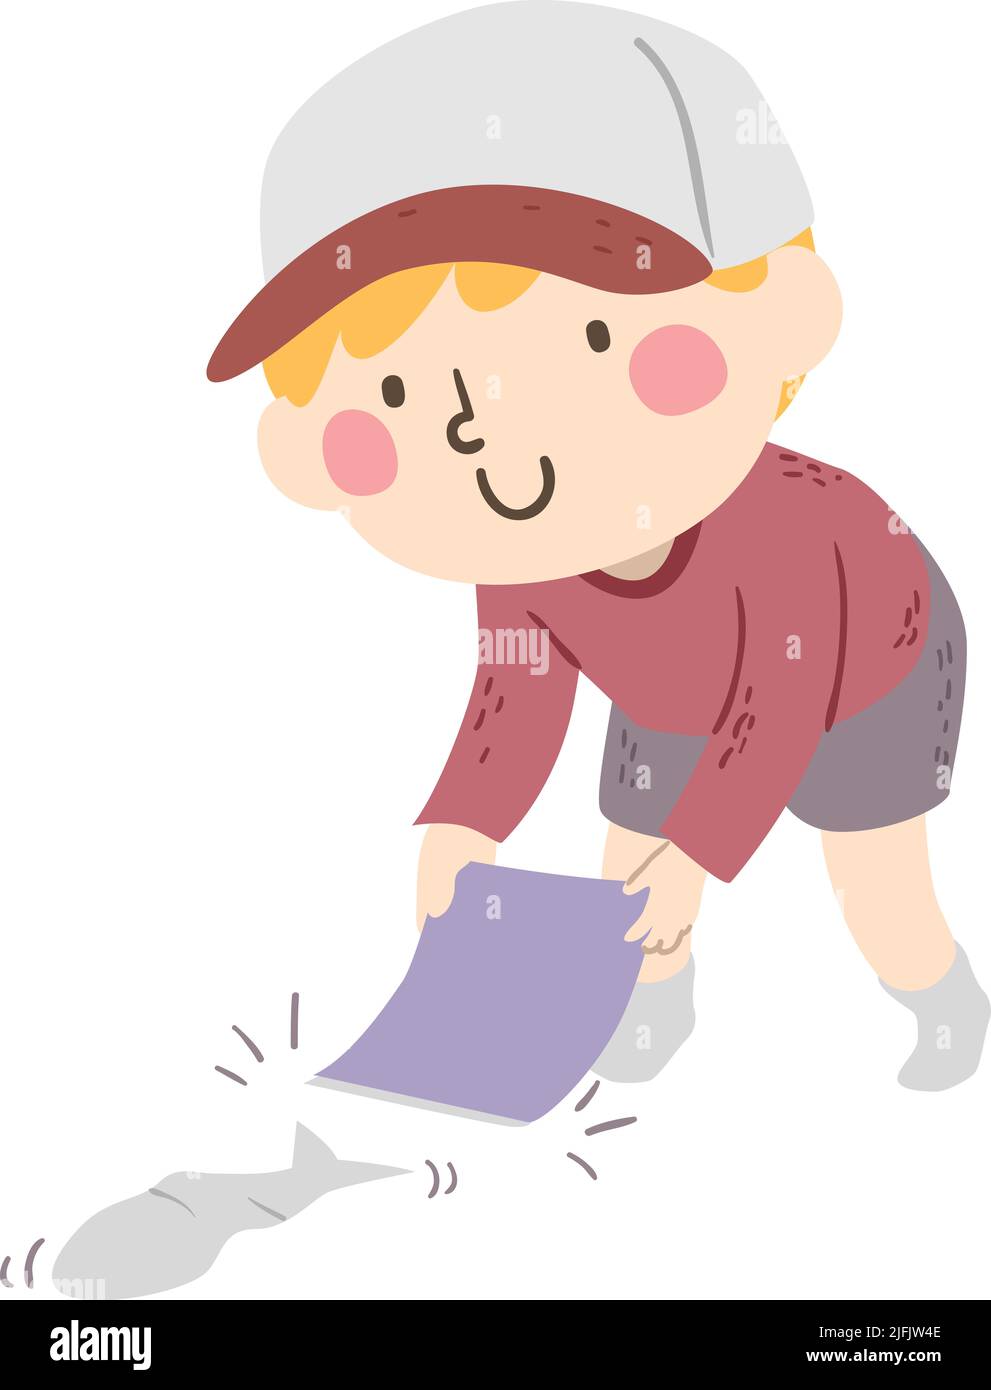 Ilustración de un niño sosteniendo cartón y animando un pescado de papel en una carrera Foto de stock